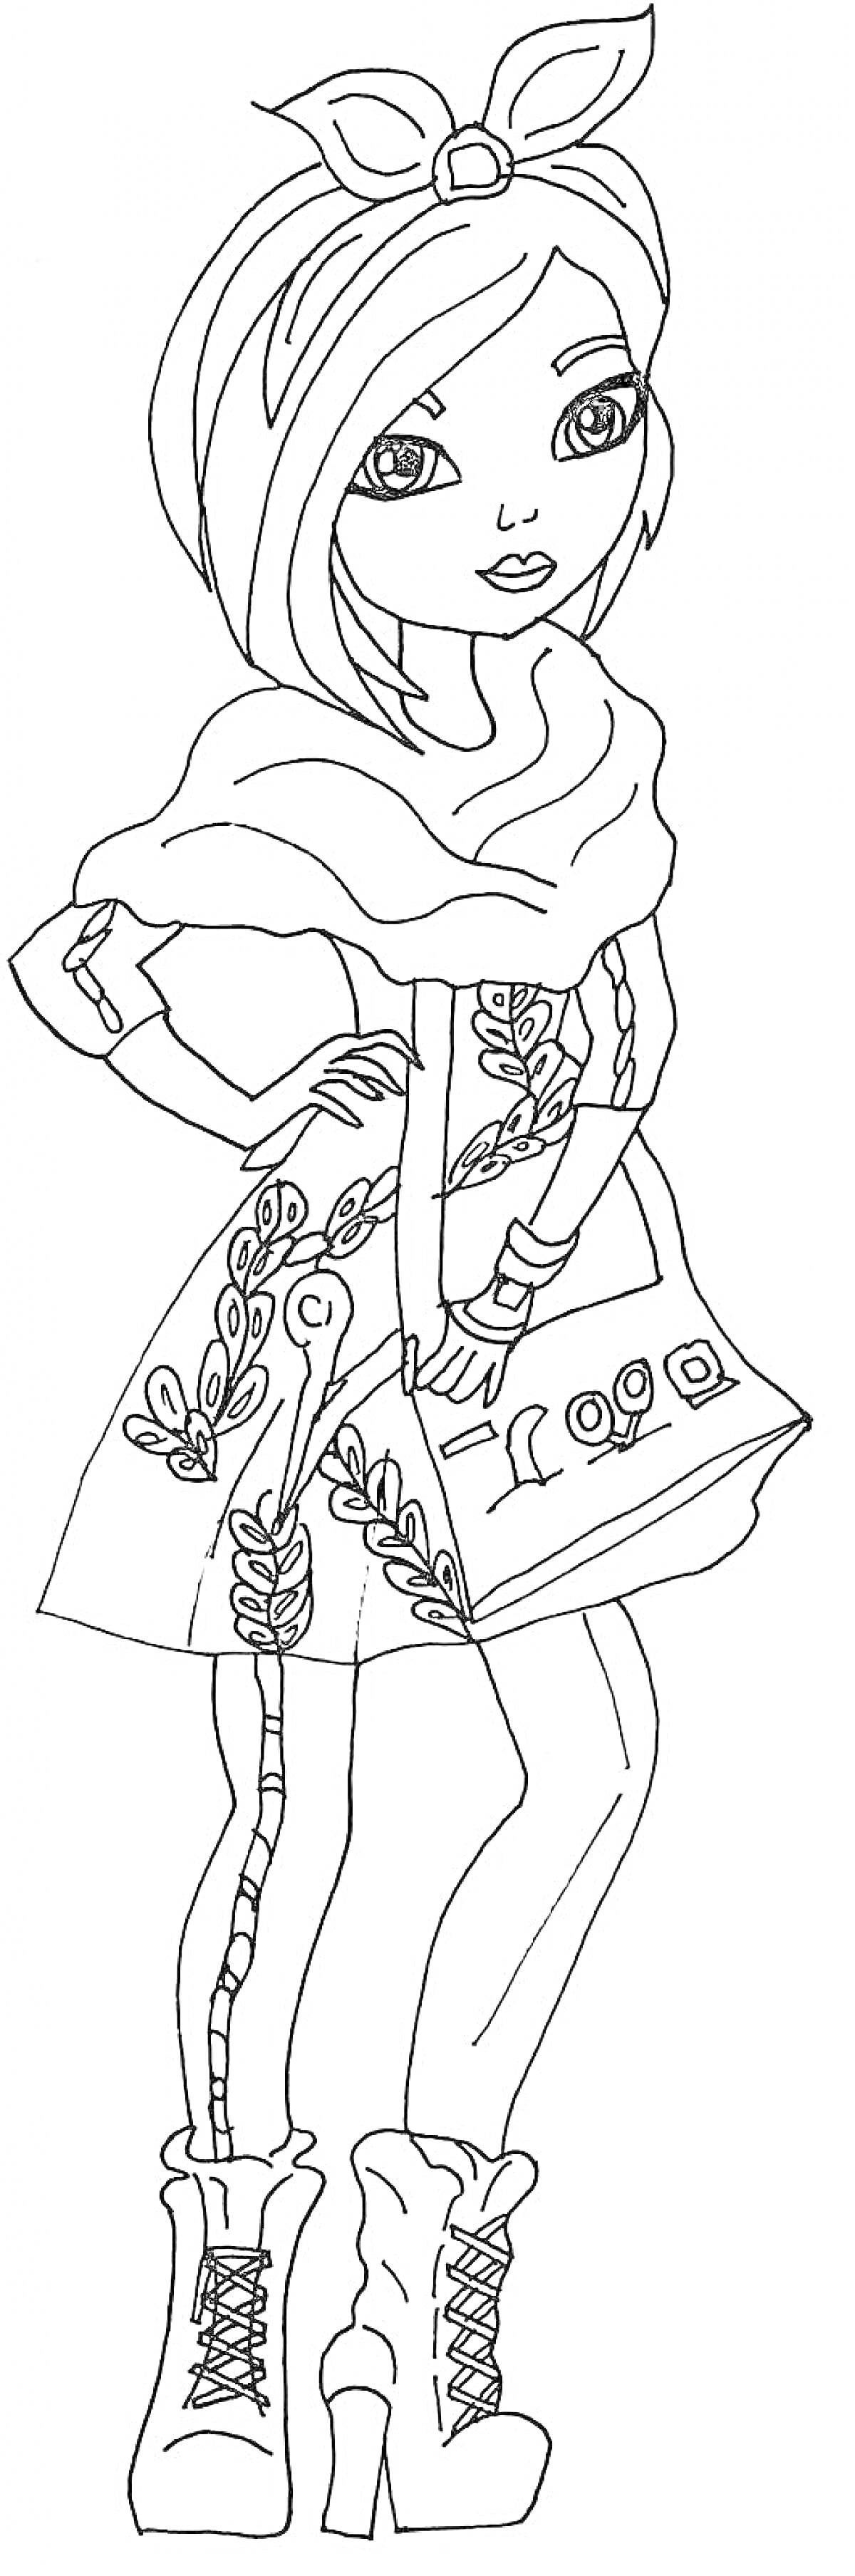 Раскраска Девочка с повязкой на голове, в платье с растительным узором и сумочкой с изображениями, в милых модных ботинках